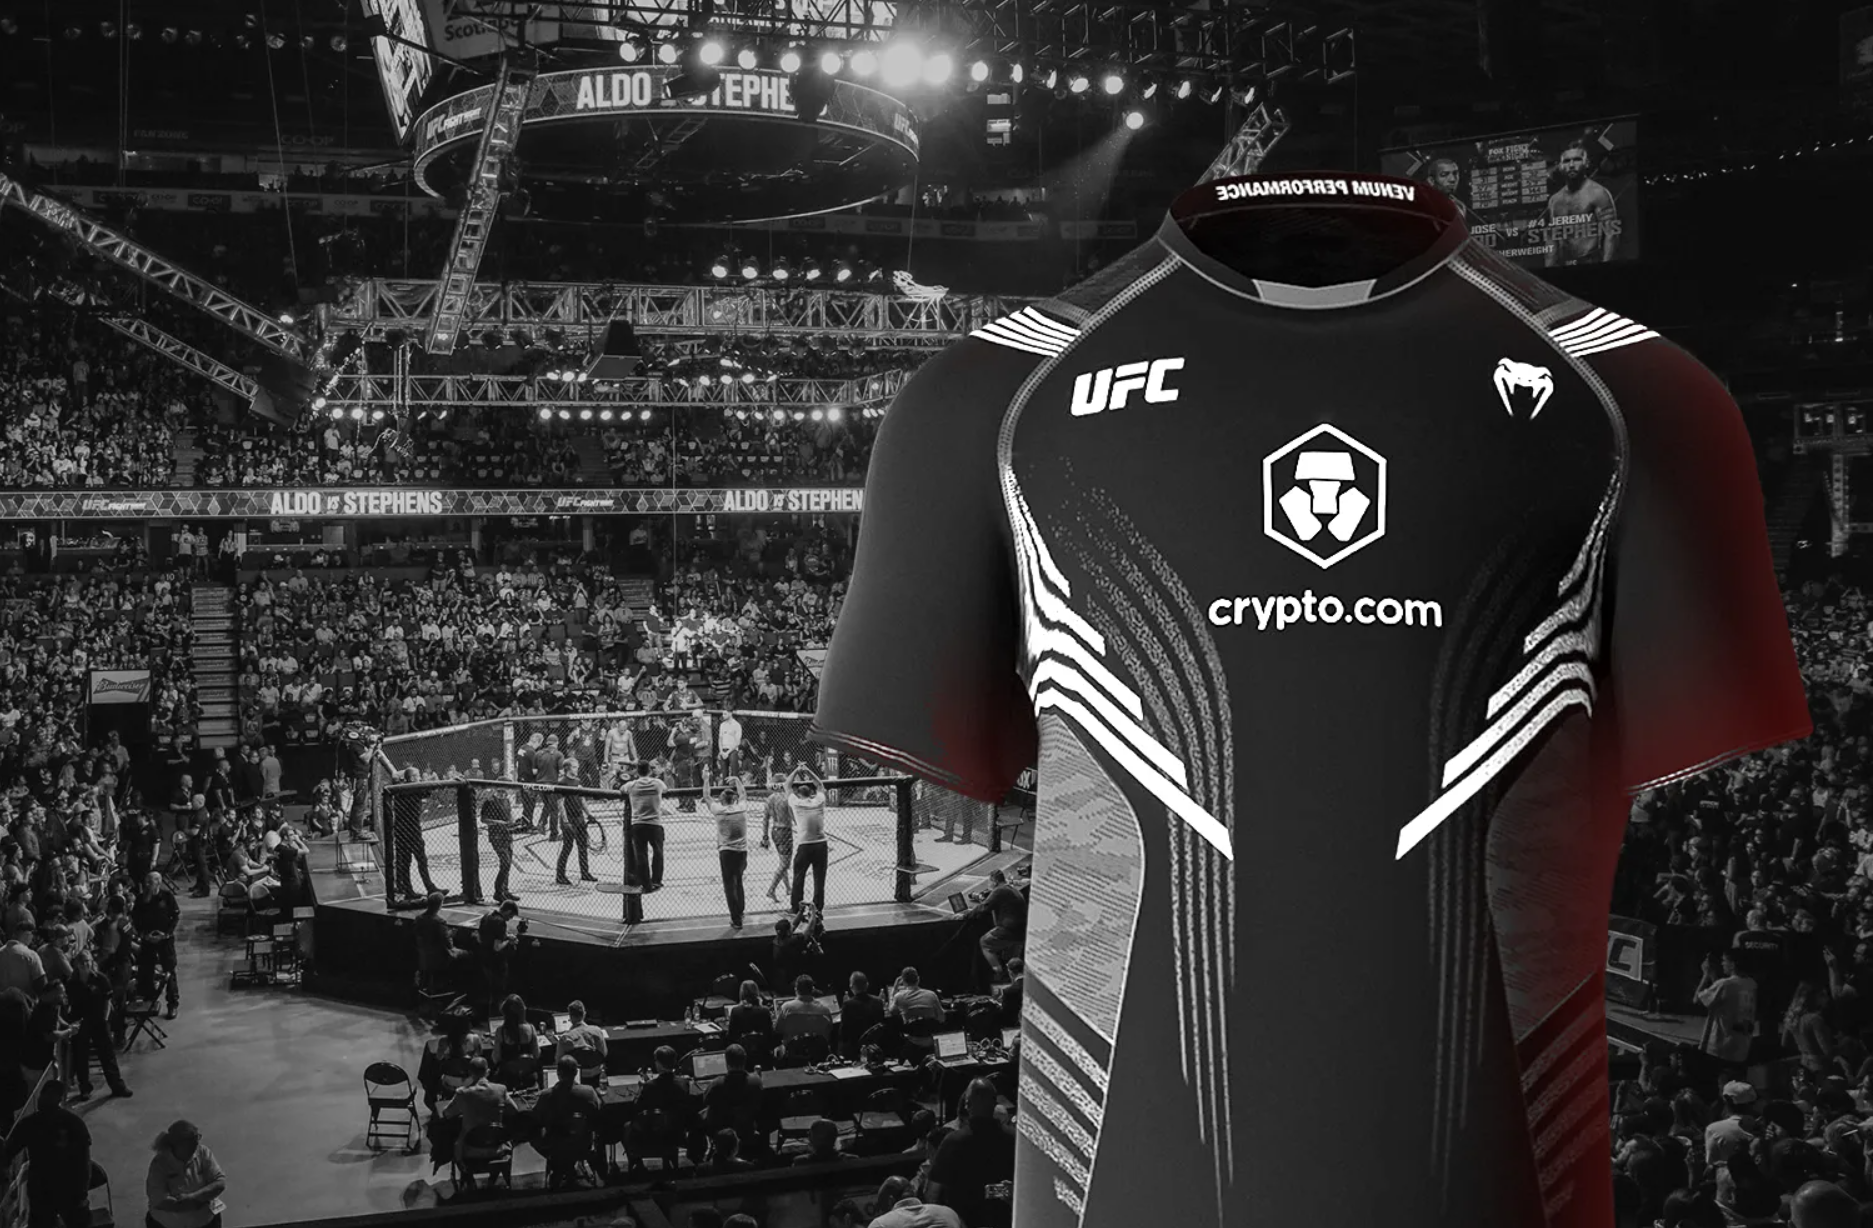 UFC Crypto.com Partnership